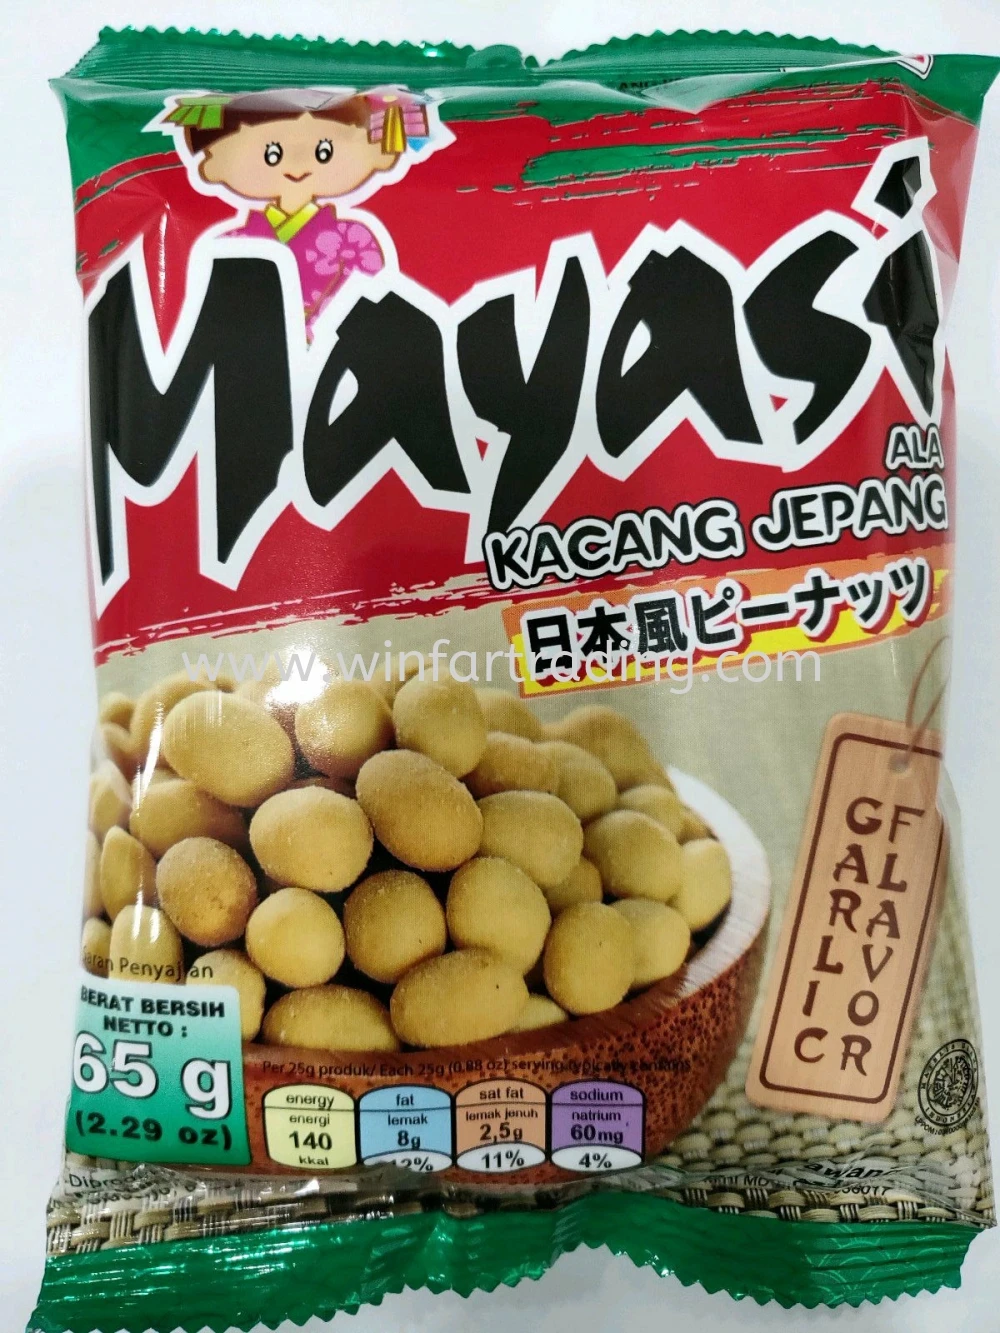 Mayasi Roasted Peanuts 2.29oz. Garlic Flavor